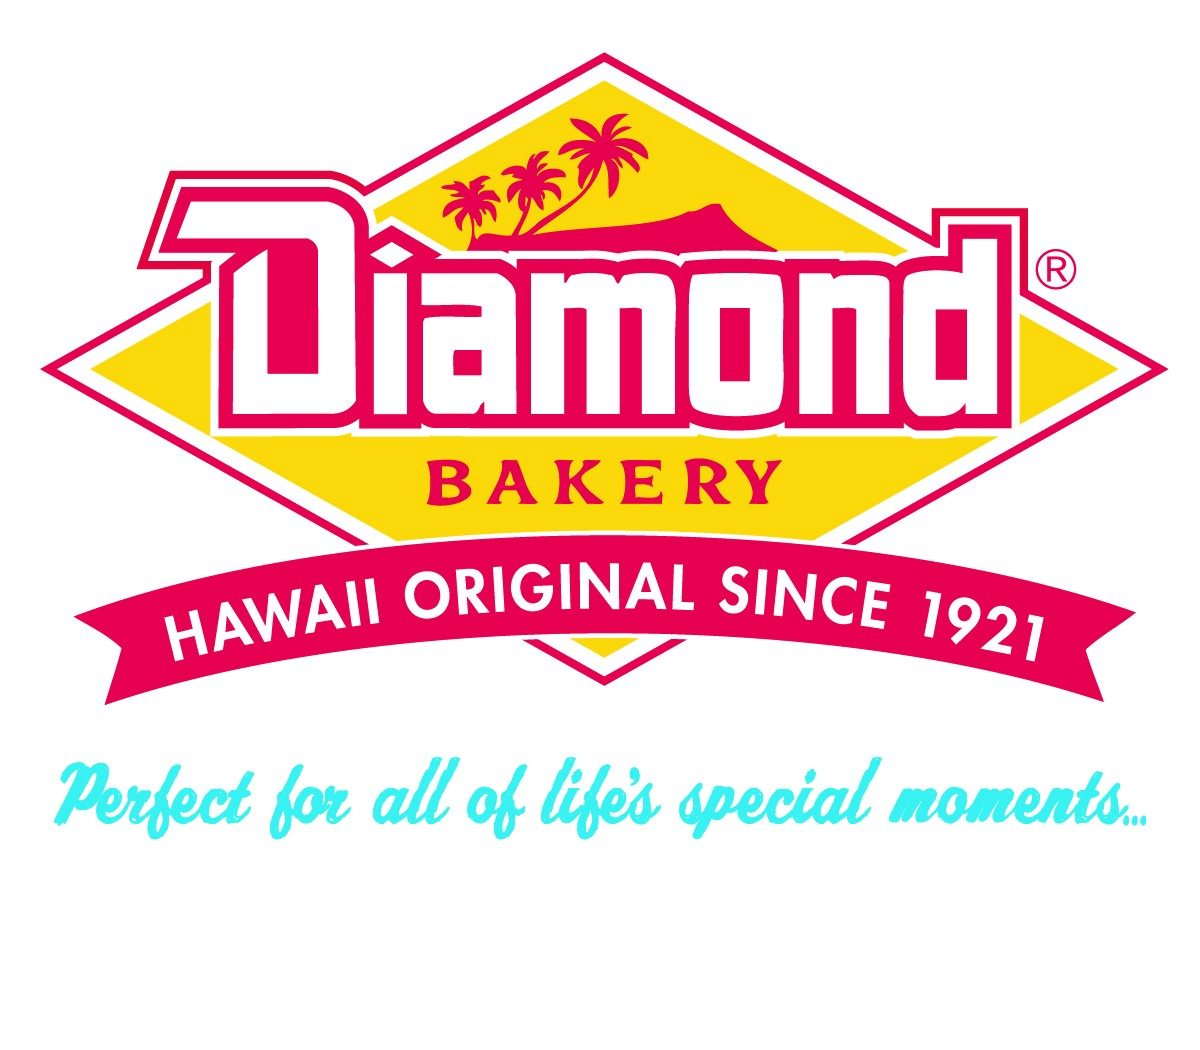 6. Panadería Diamante (Plata)